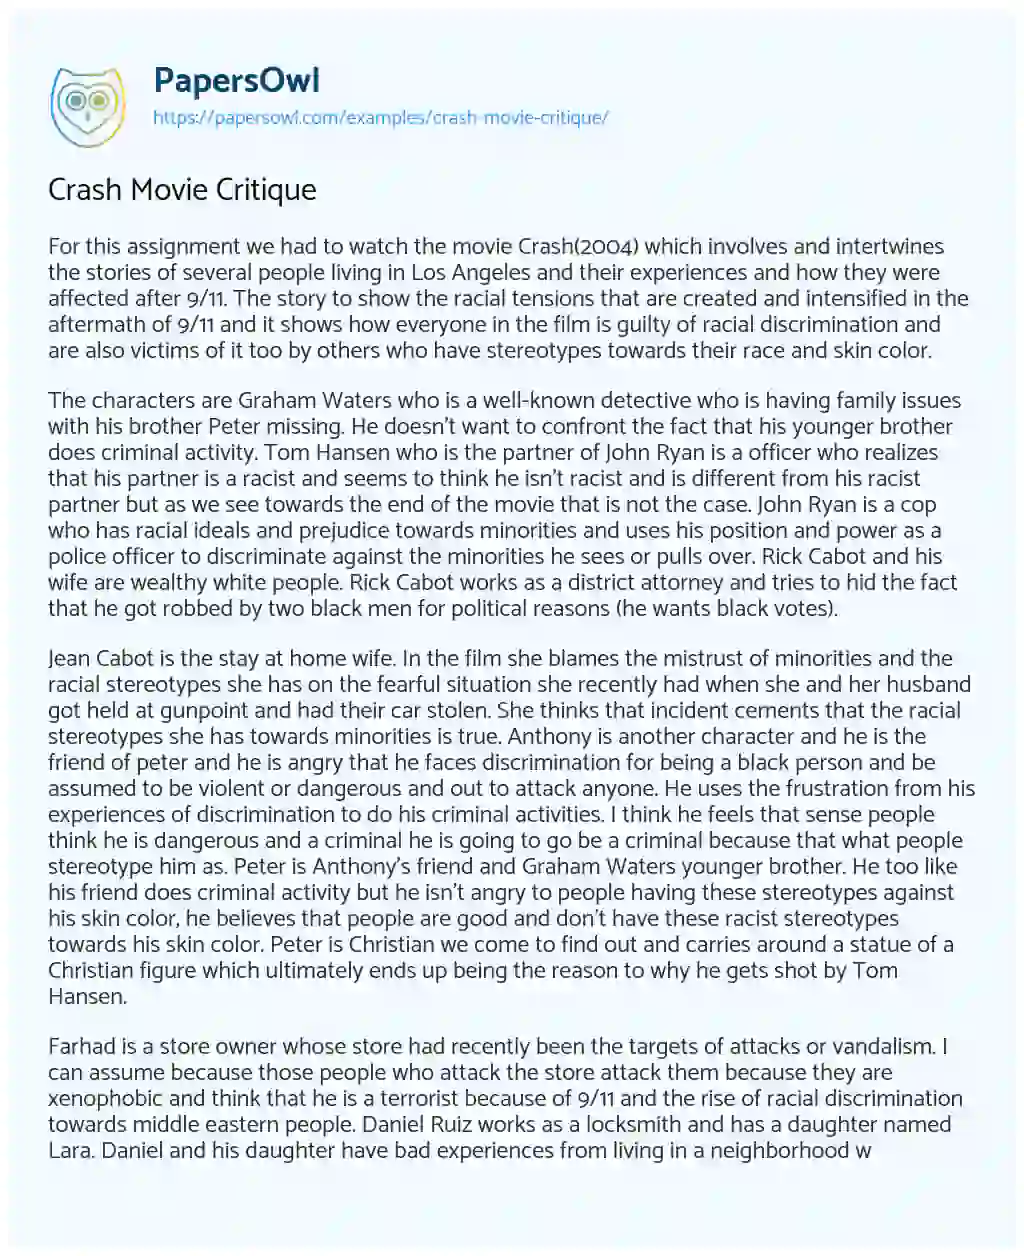 Essay on Crash Movie Critique